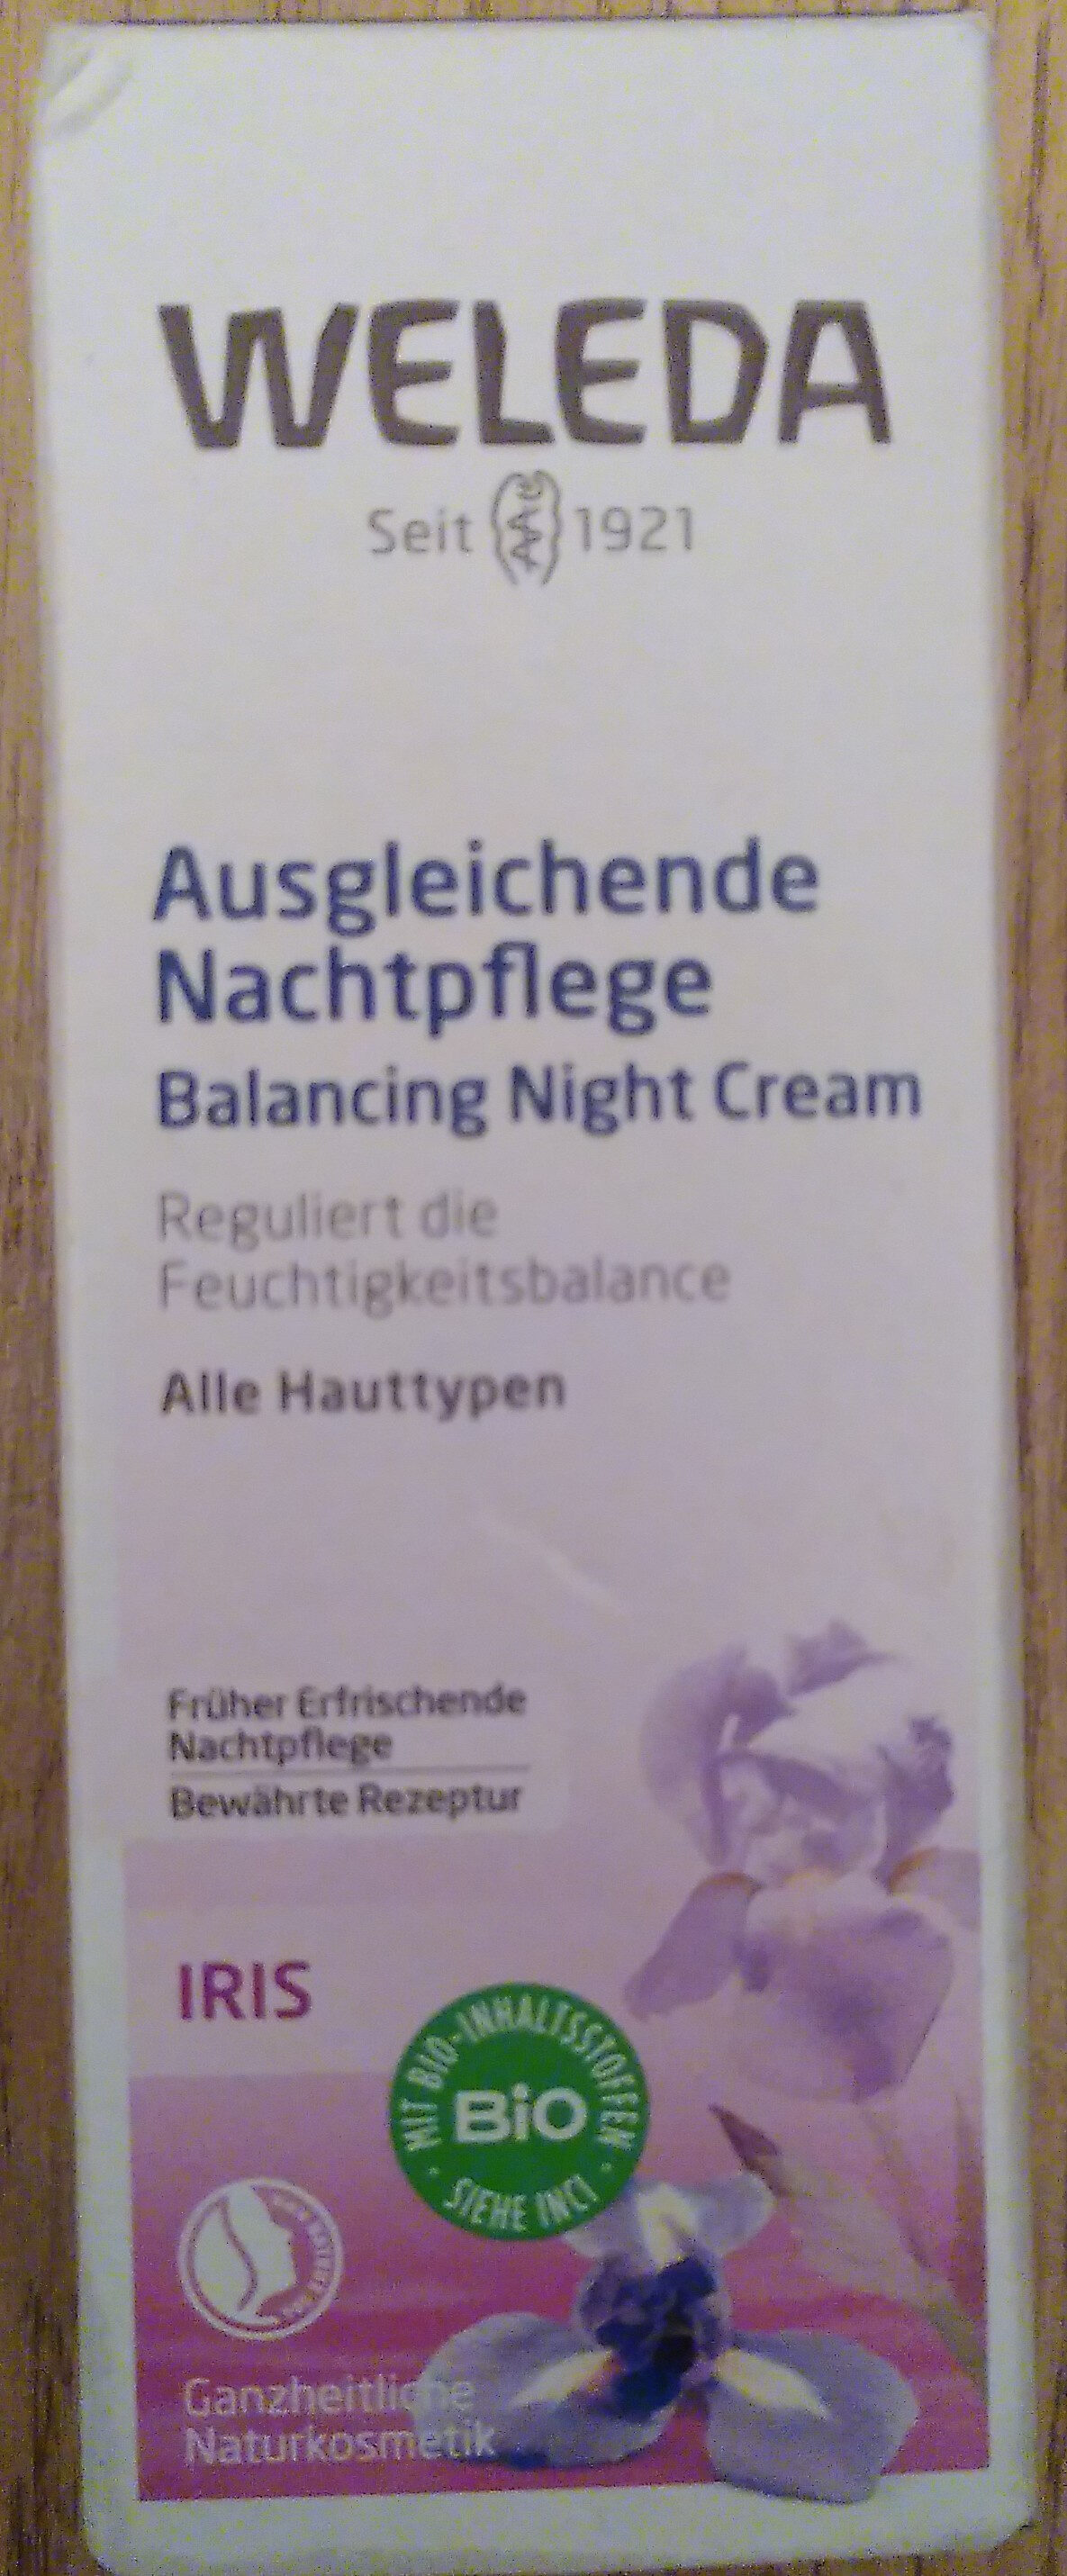 Ausgleichende Nachtpflege - Produit - de